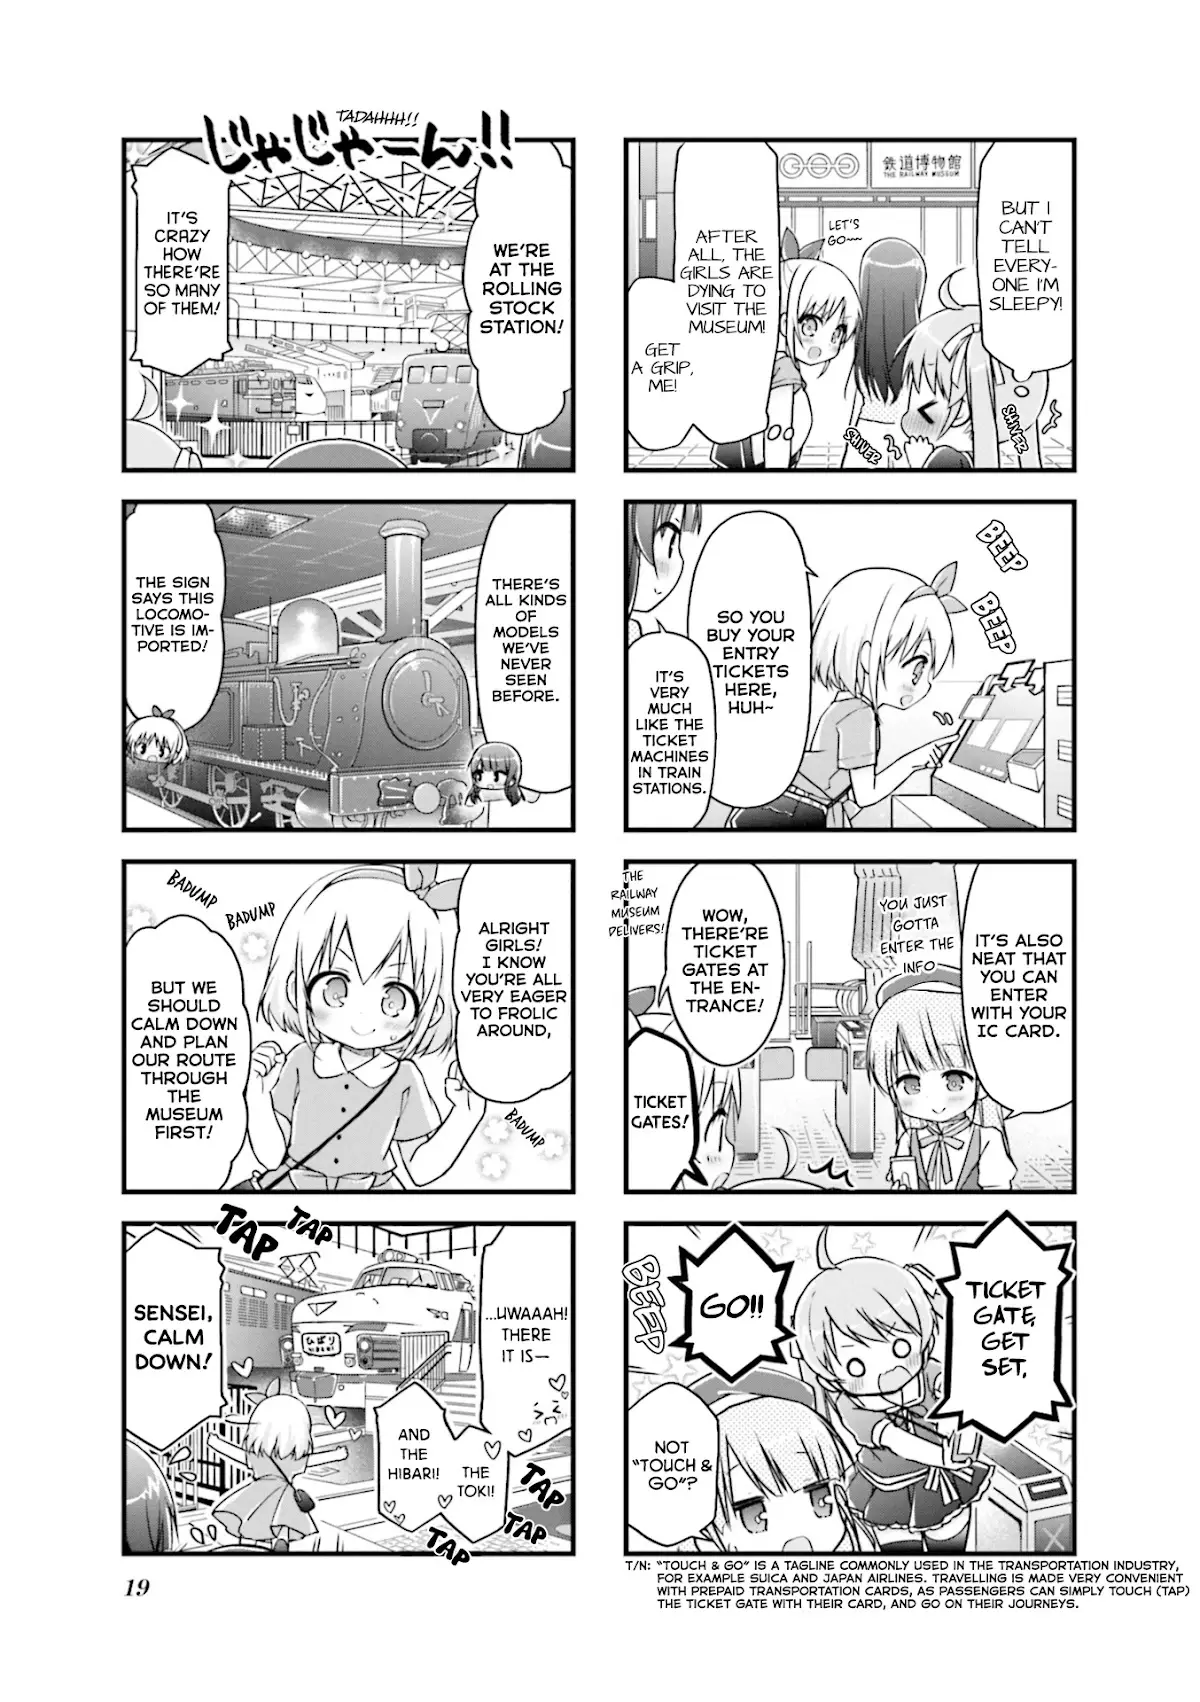 Hatsukoi*rail Trip - 15 page 3-fc63c0a7